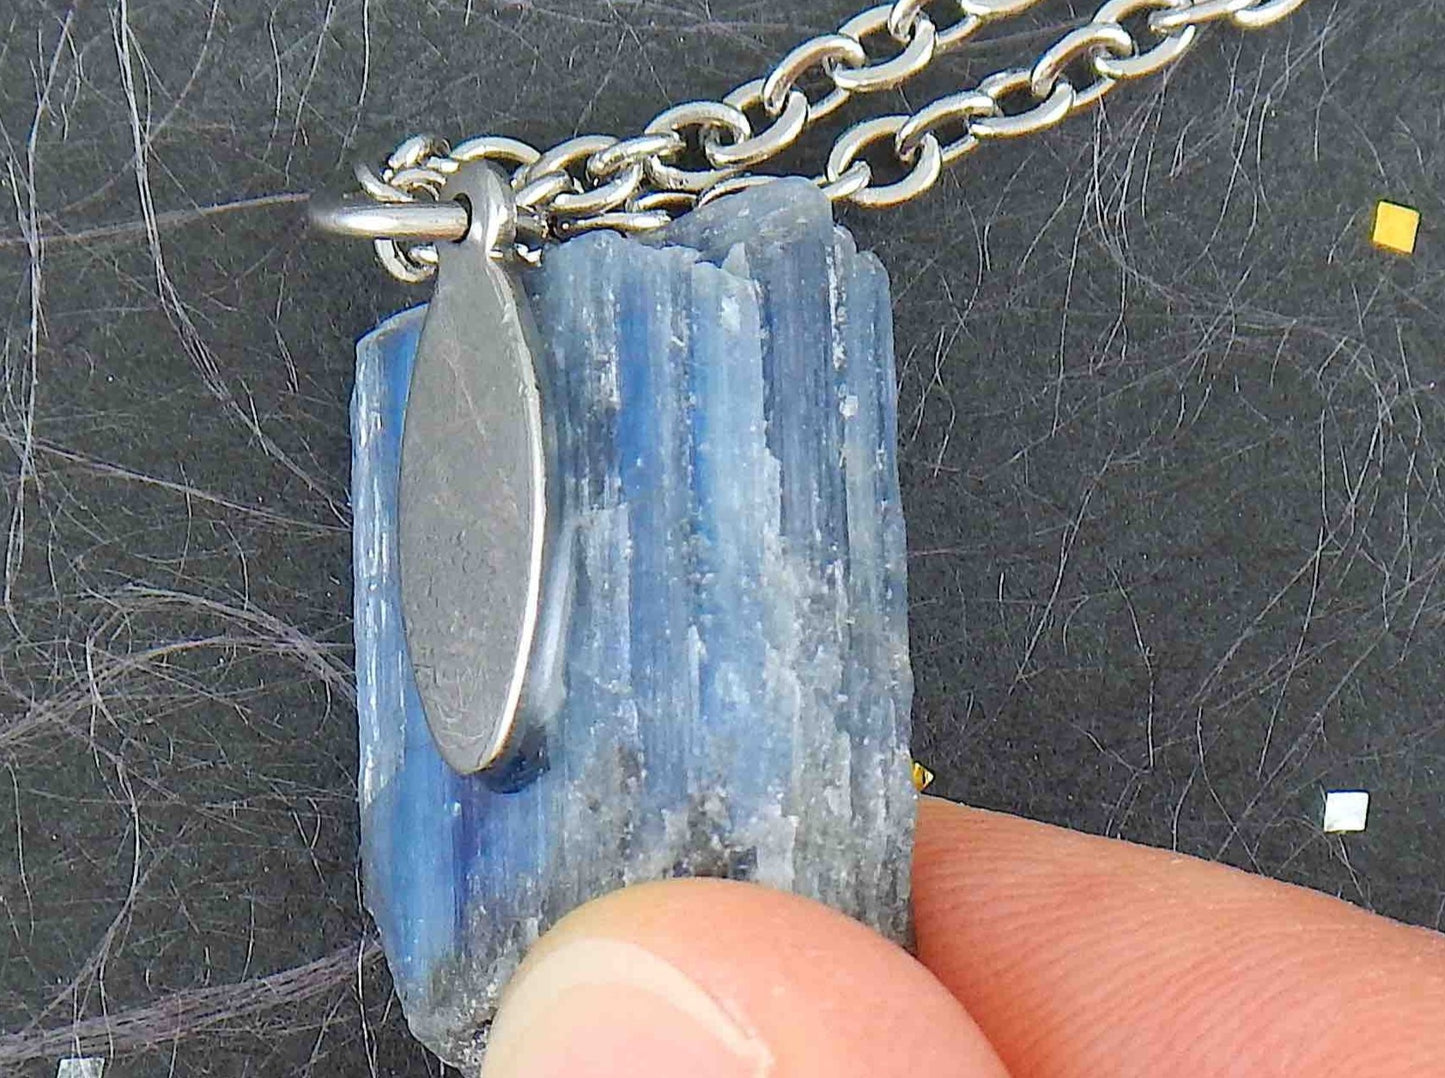 Collier 16 po à pendentif ovale tronqué de pierre kyanite bleu iridescent, chaîne acier inoxydable